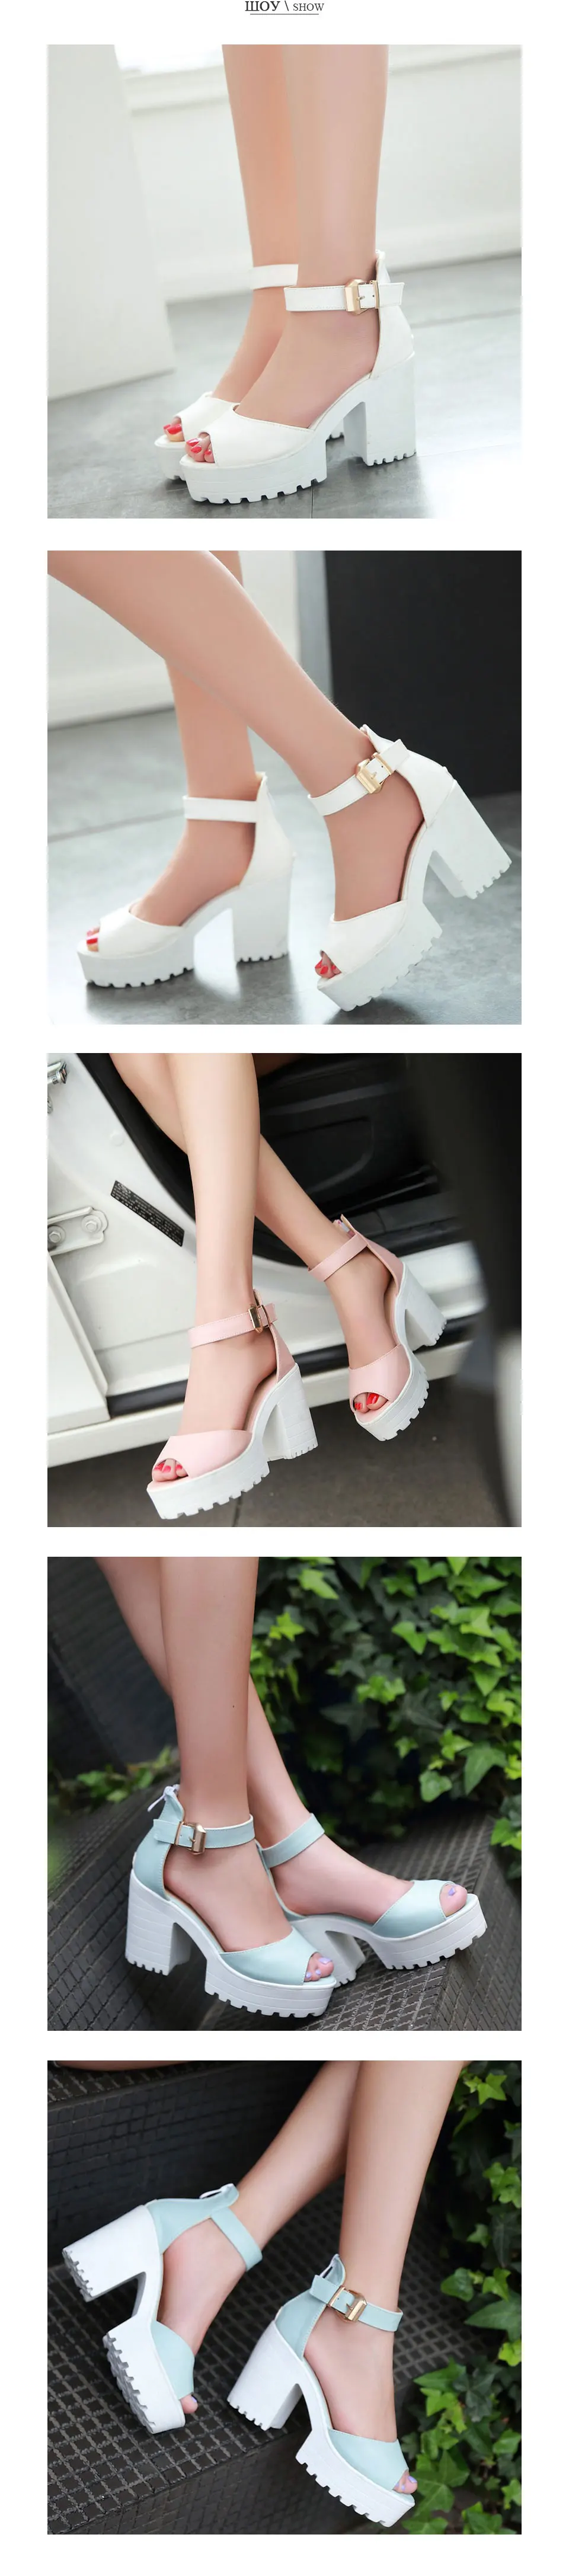 Fanyuan/ г. Женские босоножки ярких цветов с открытым носком и ремешком на щиколотке пикантные женские вечерние босоножки на очень высоком каблуке и платформе для свиданий размер 34-43